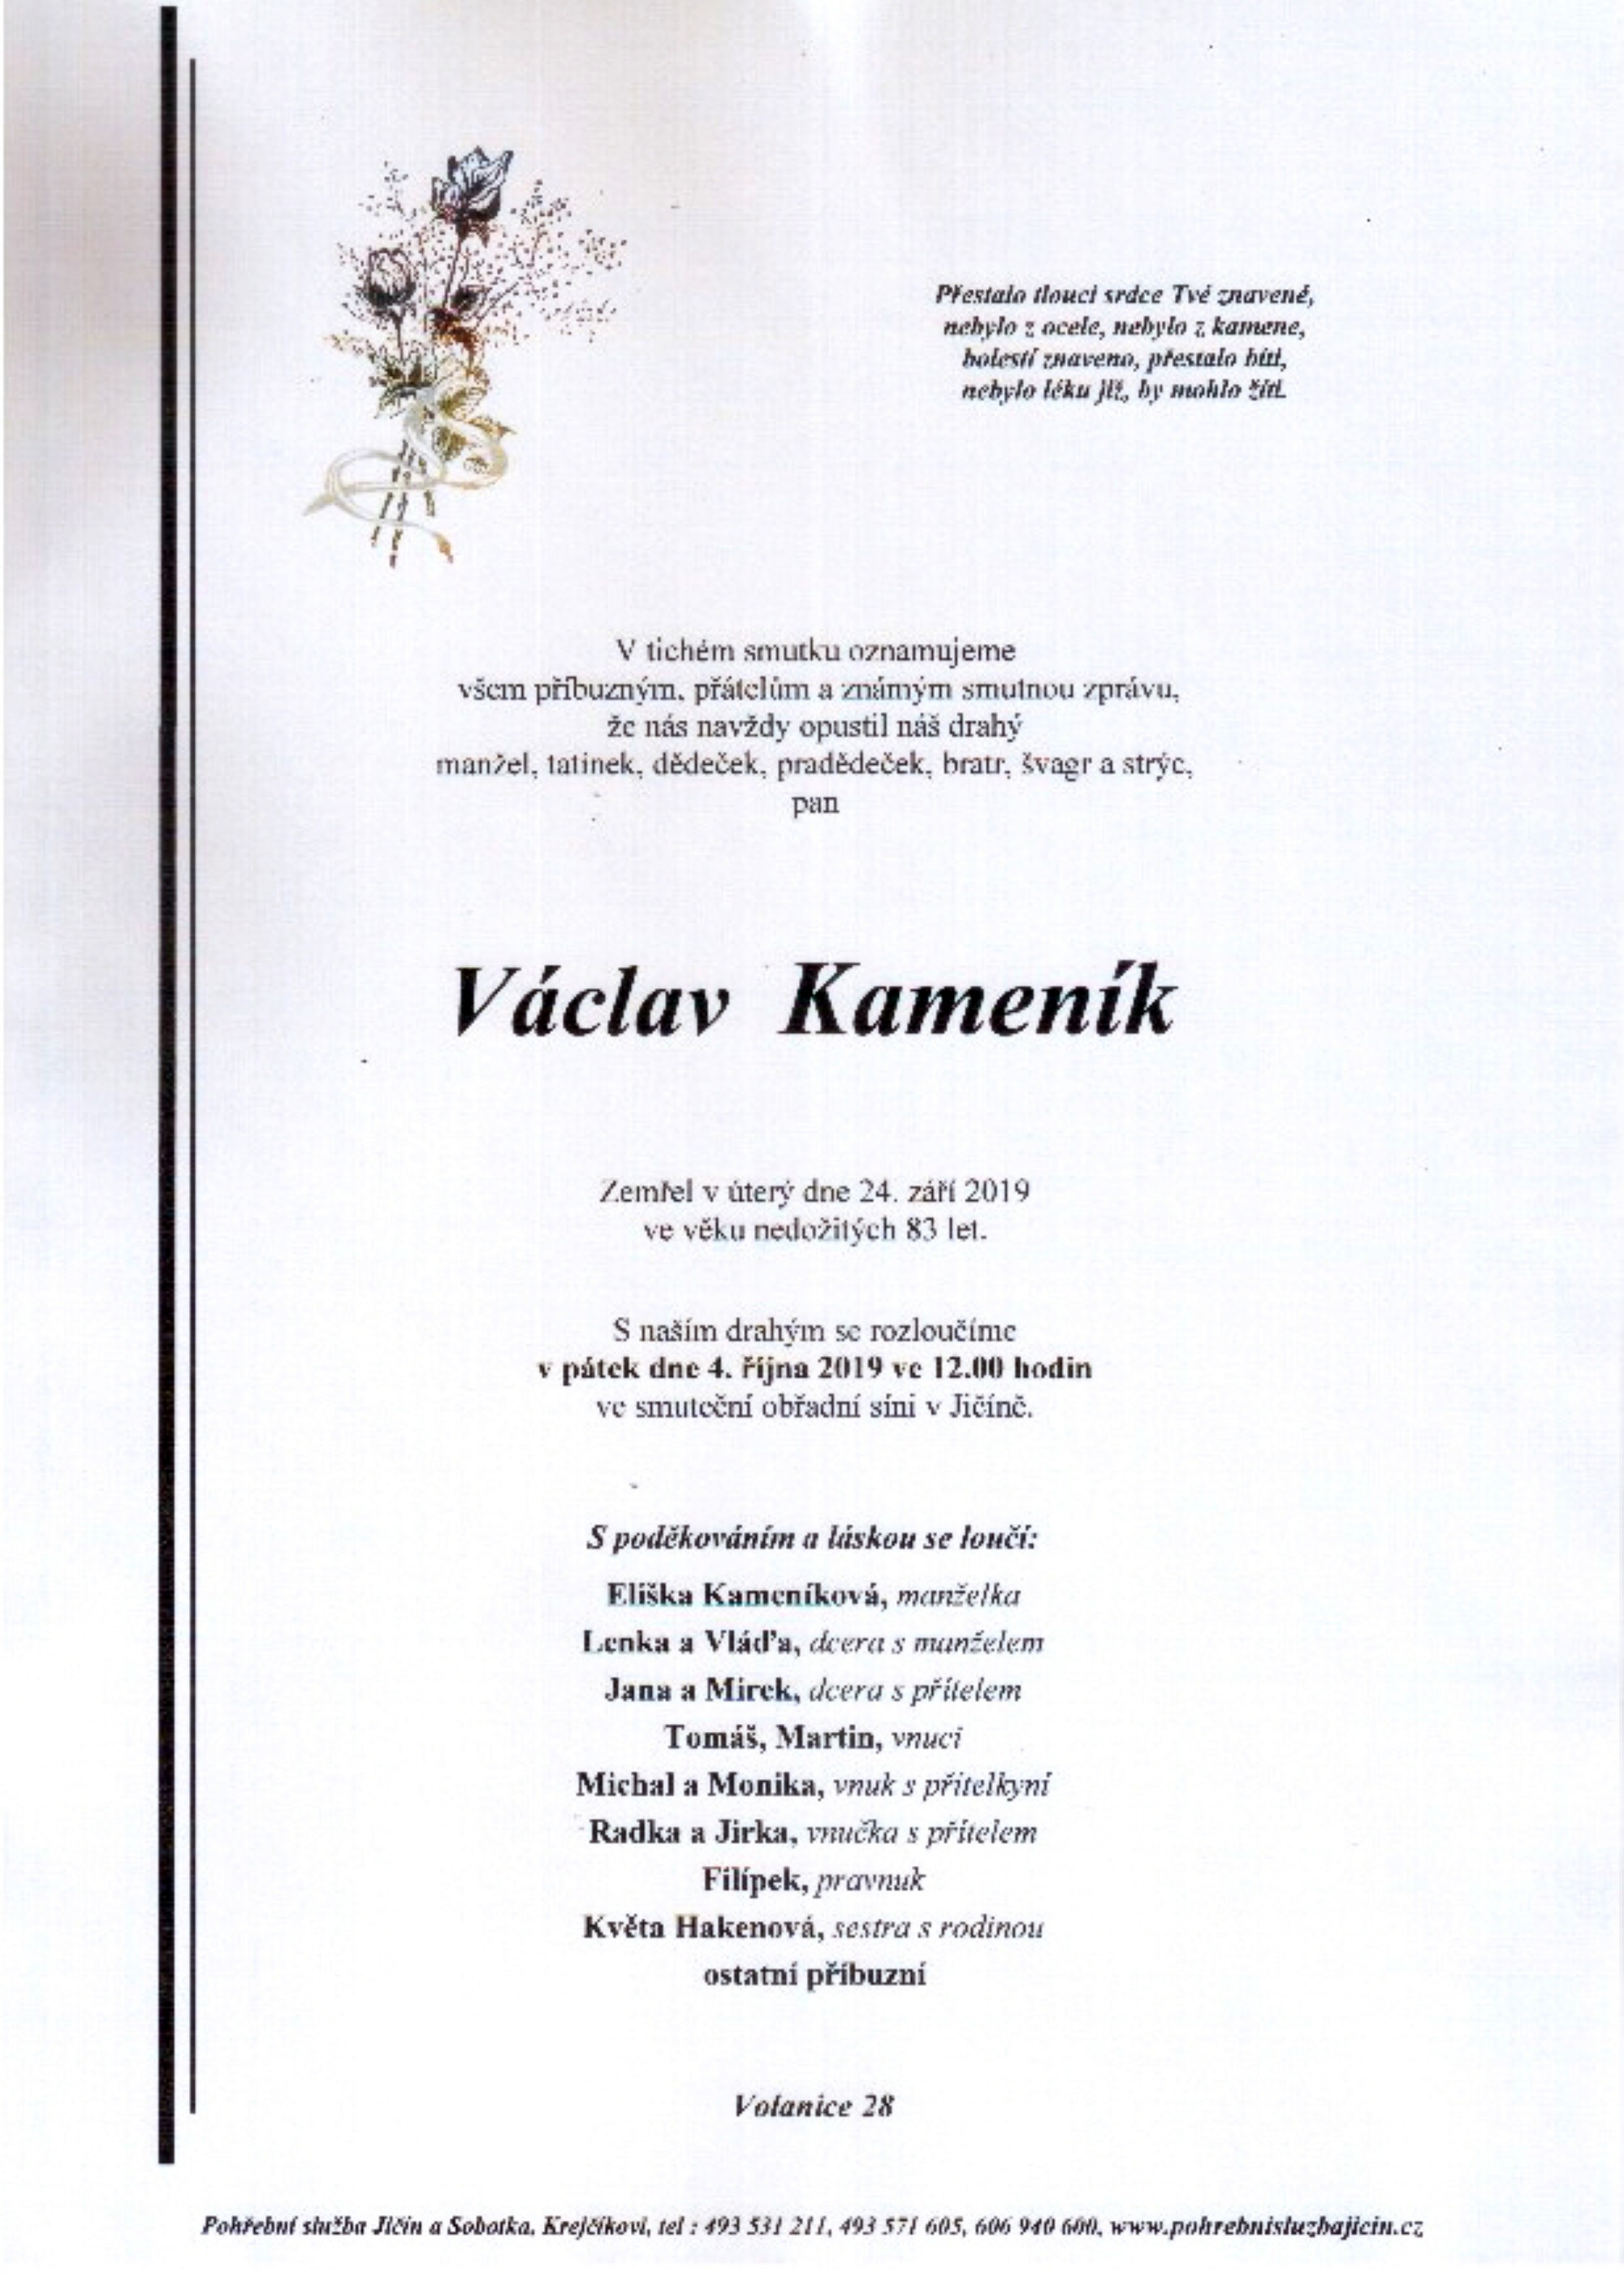 Václav Kameník